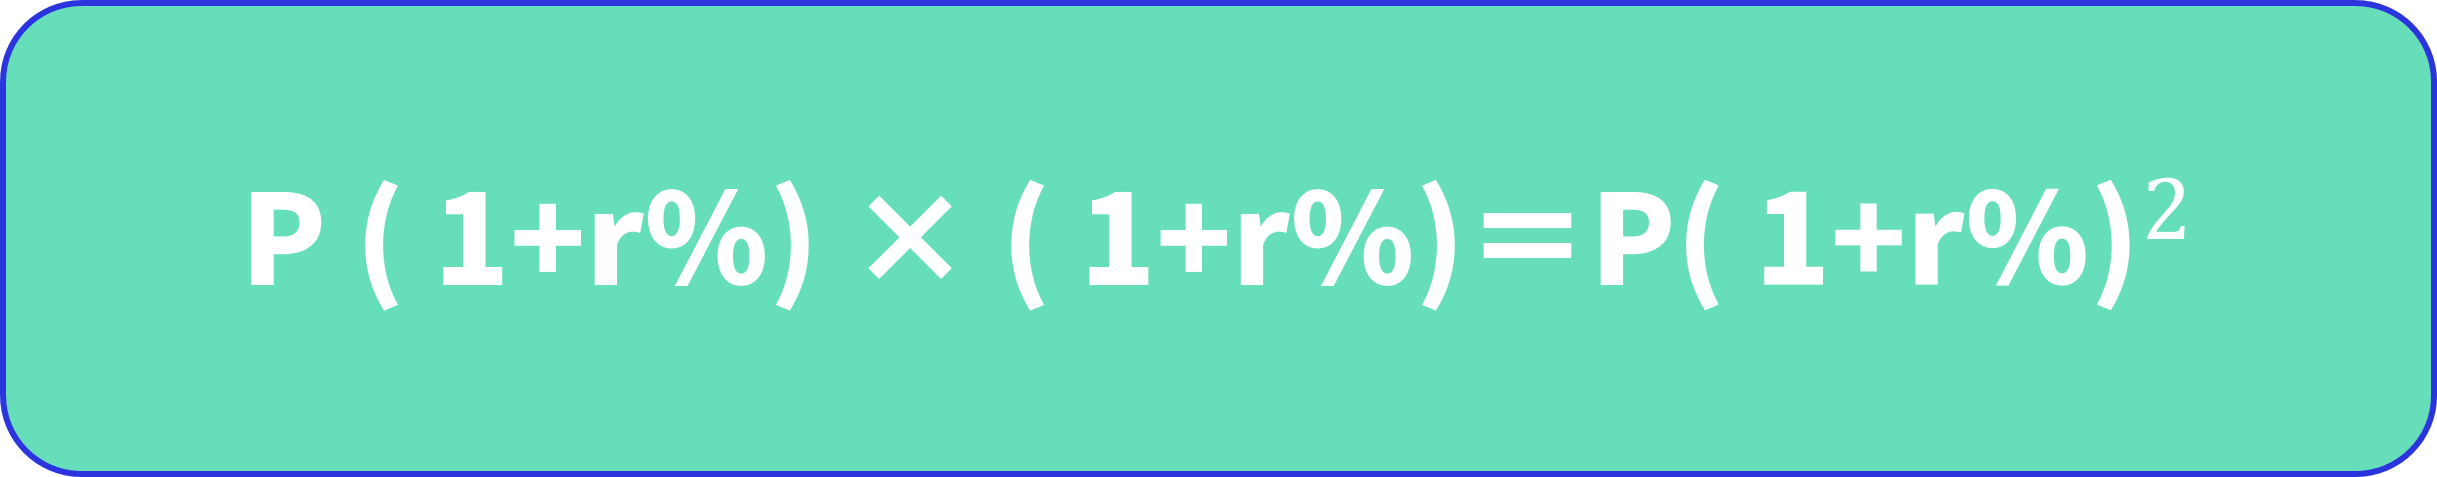 P(1+r%) × (1+r%) = P(1+r%)^2